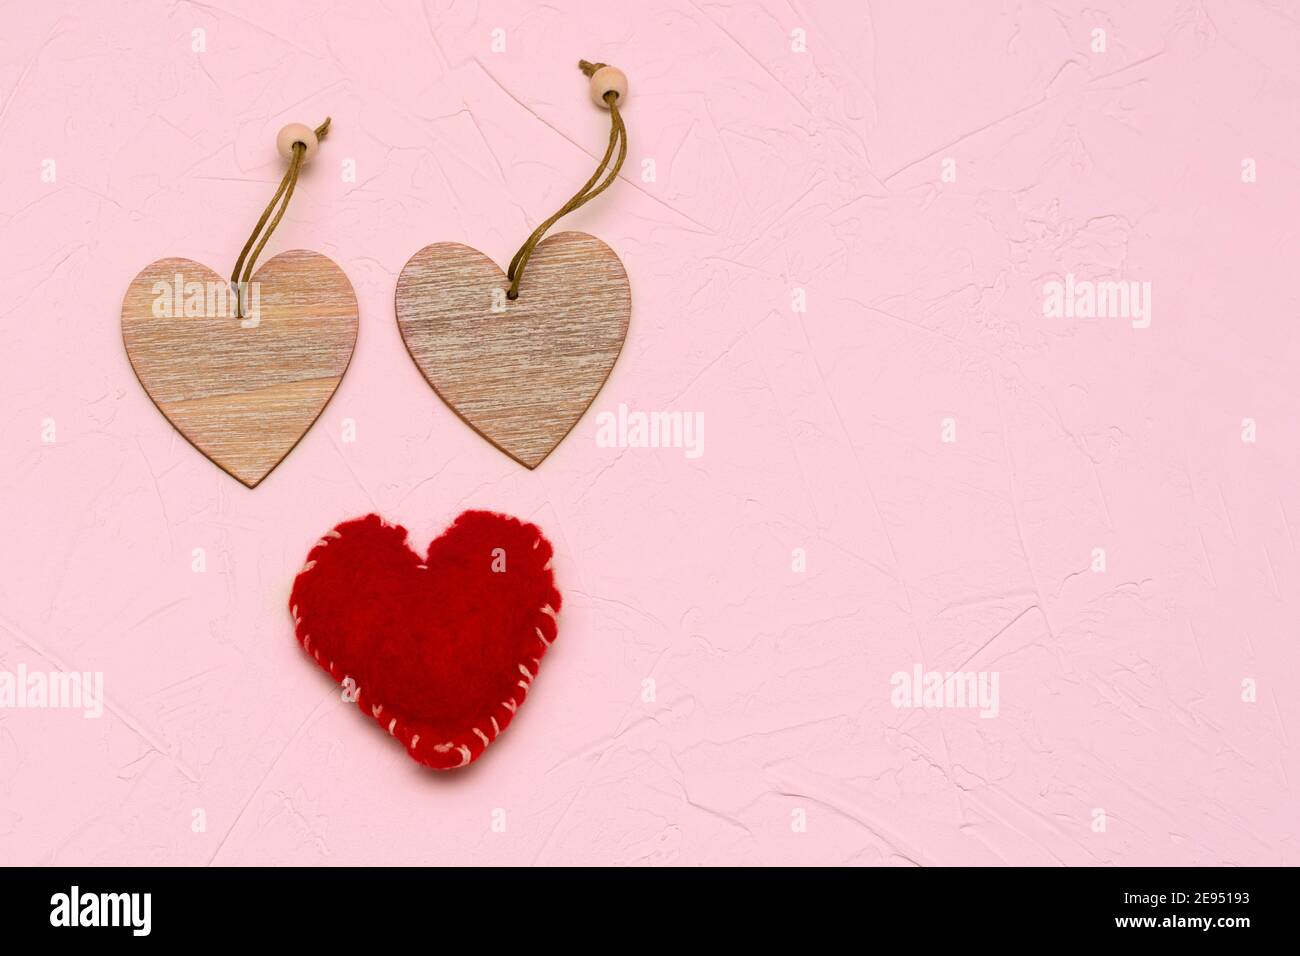 Deux coeurs en bois et une laine artisanale rouge sur fond texturé rose. Concept pour la Saint-Valentin, l'amour, le mariage. Banque D'Images